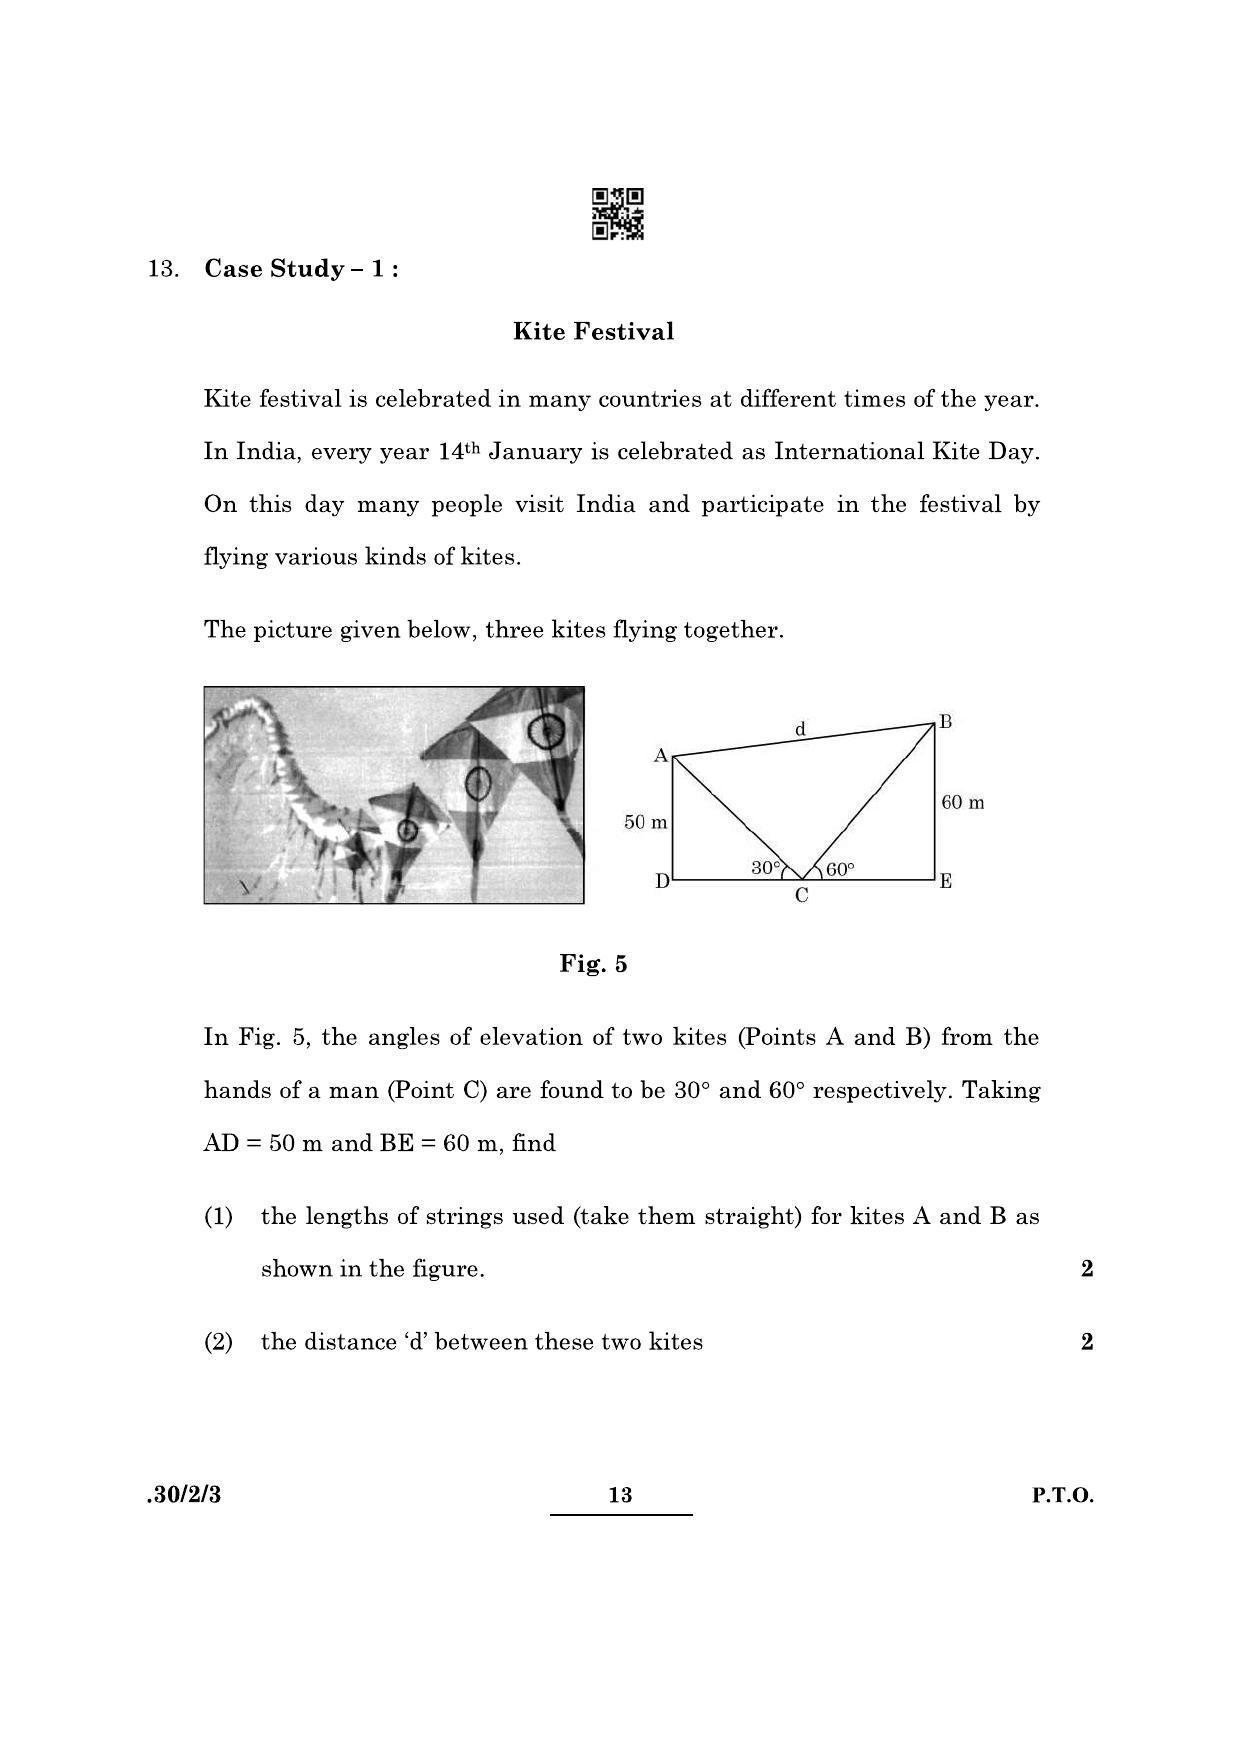 CBSE Class 10 Maths (30/2/3 - SET III) 2022 Question Paper - Page 13